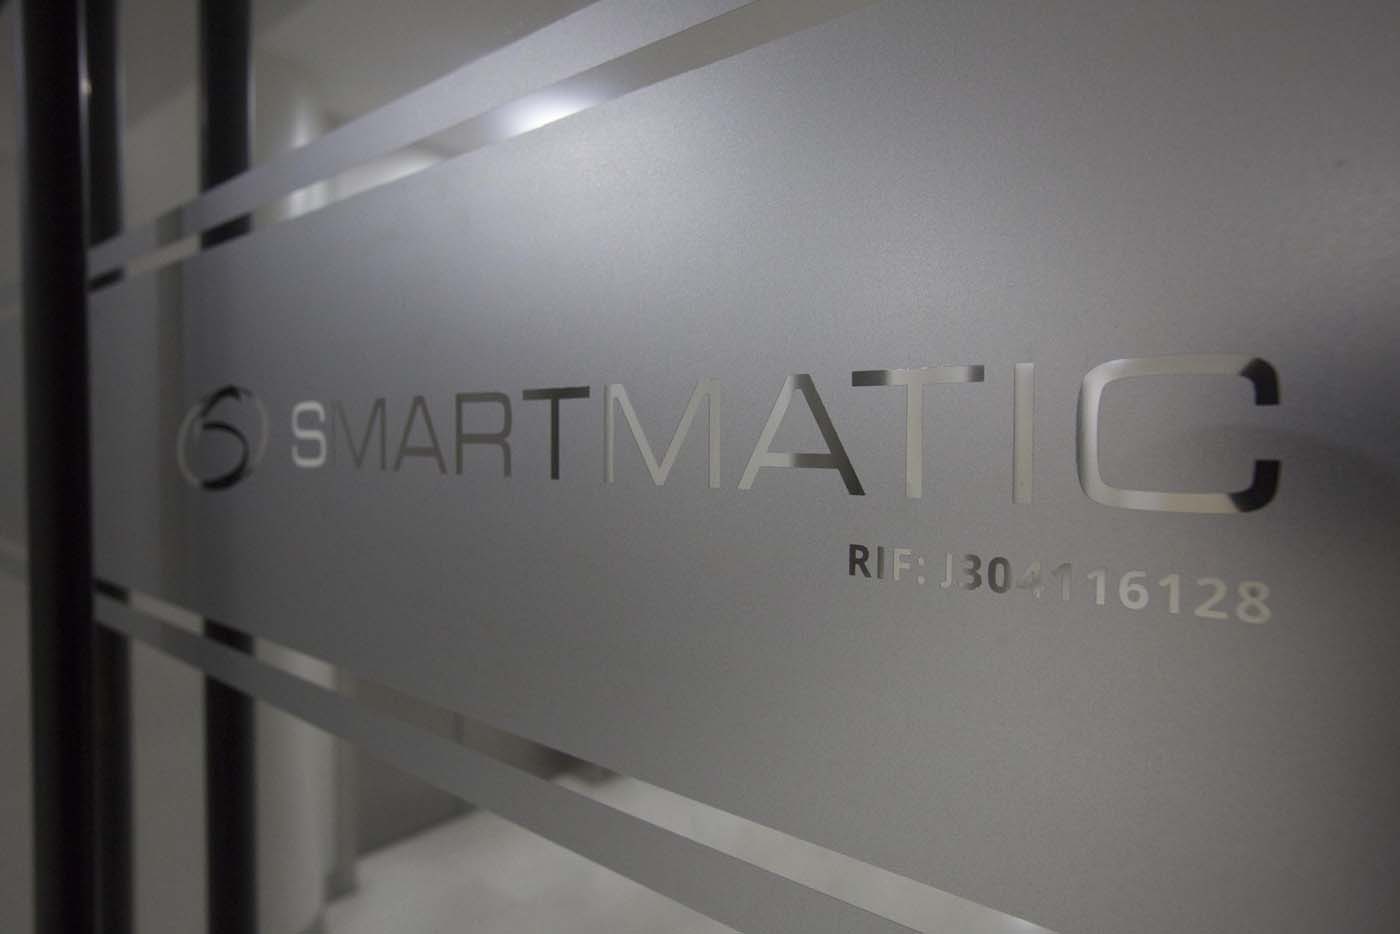 Smartmatic cesa operaciones en Venezuela ante incapacidad de certificar resultados